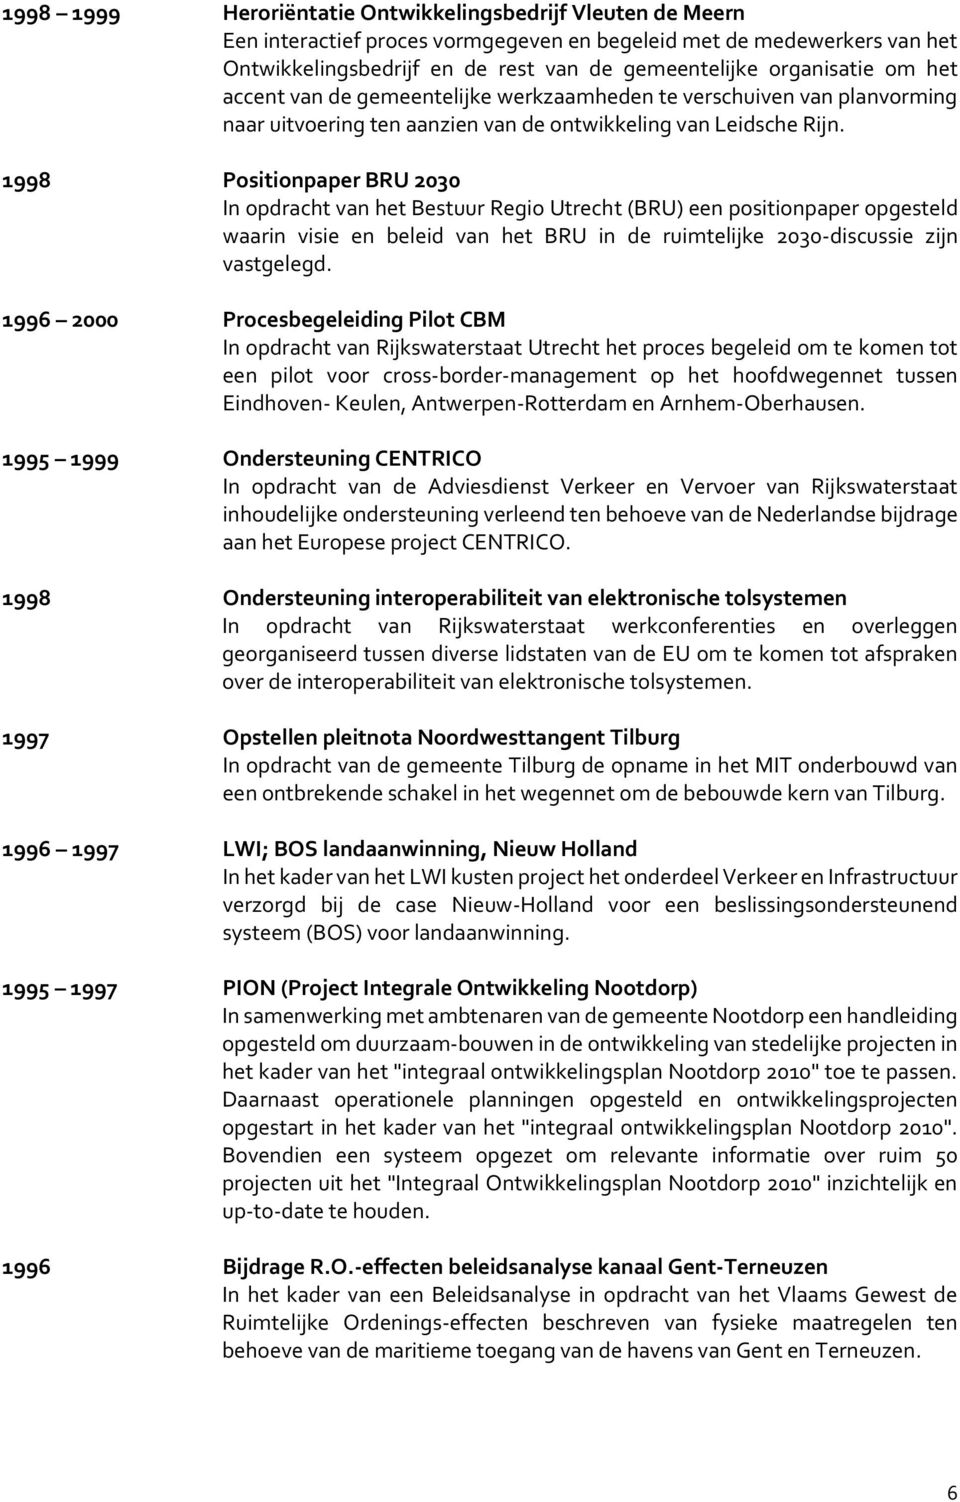 1998 Positionpaper BRU 2030 In opdracht van het Bestuur Regio Utrecht (BRU) een positionpaper opgesteld waarin visie en beleid van het BRU in de ruimtelijke 2030-discussie zijn vastgelegd.